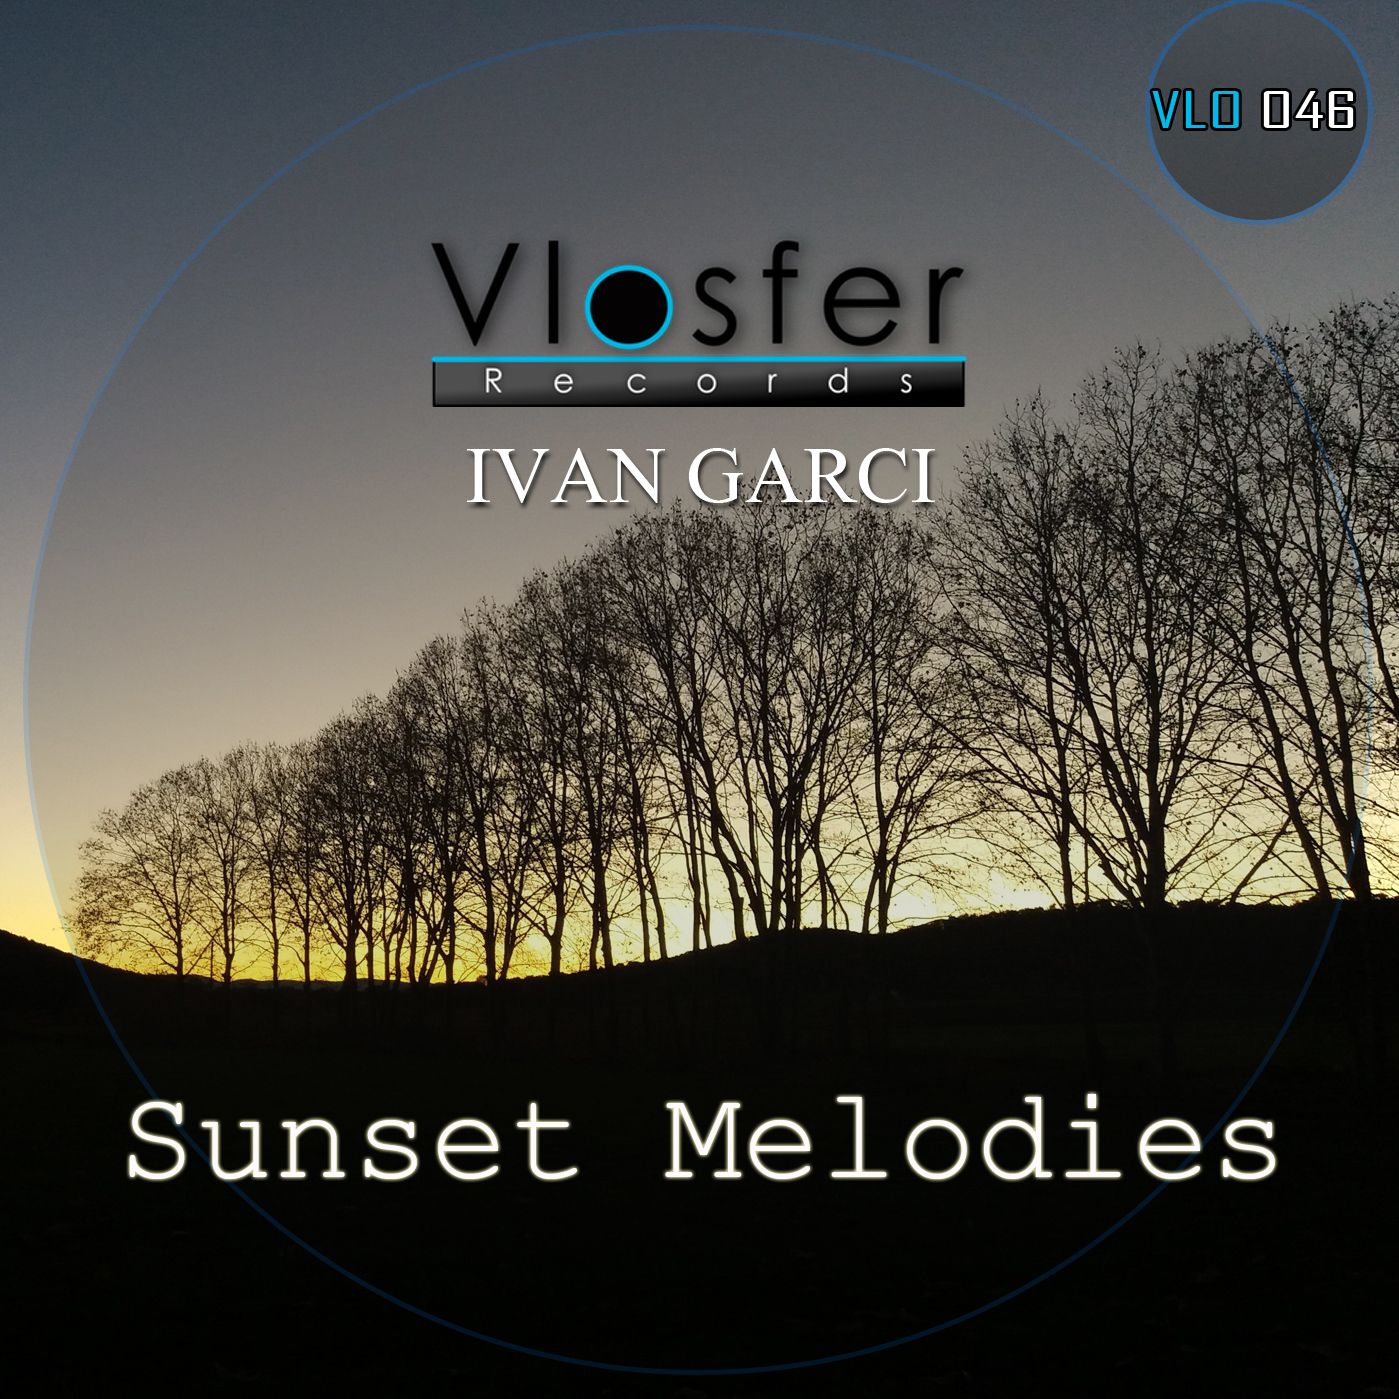 බාගත Clear - Ivan Garci (low quality sound) Vlosfer records.